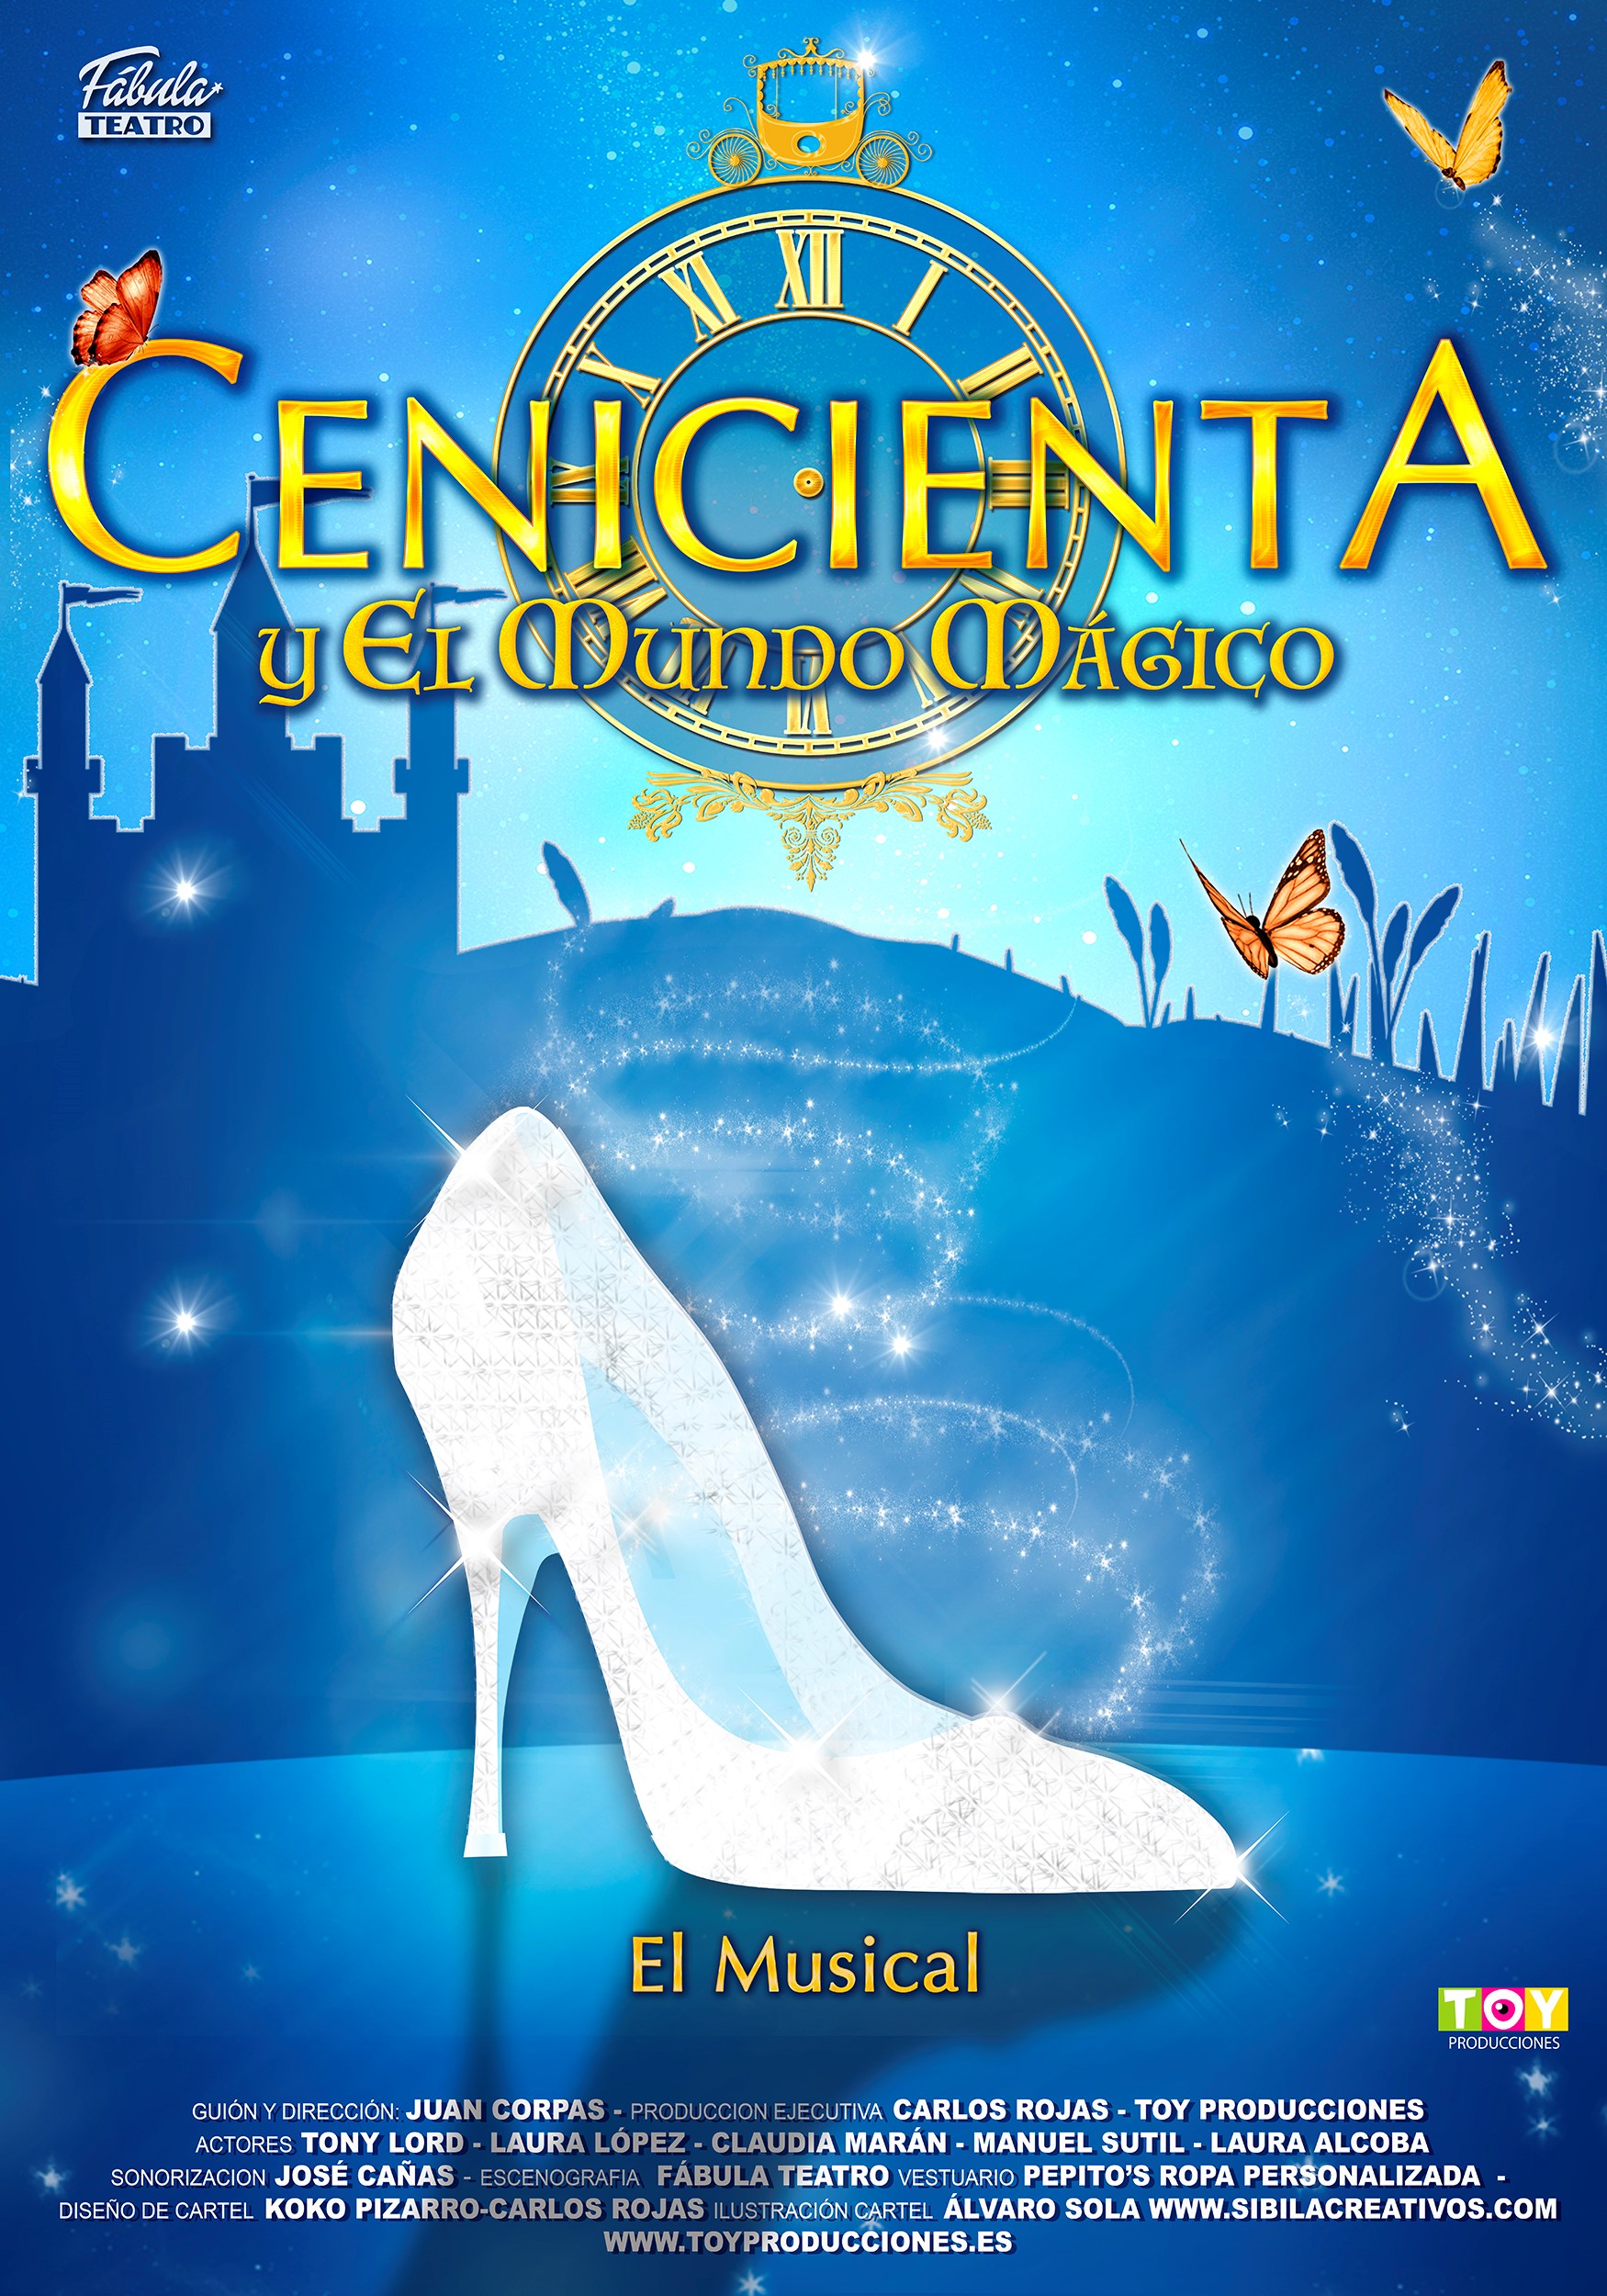 7 de Octubre: Cenicienta y el mundo mágico - Teatro Zorrilla de Valladolid